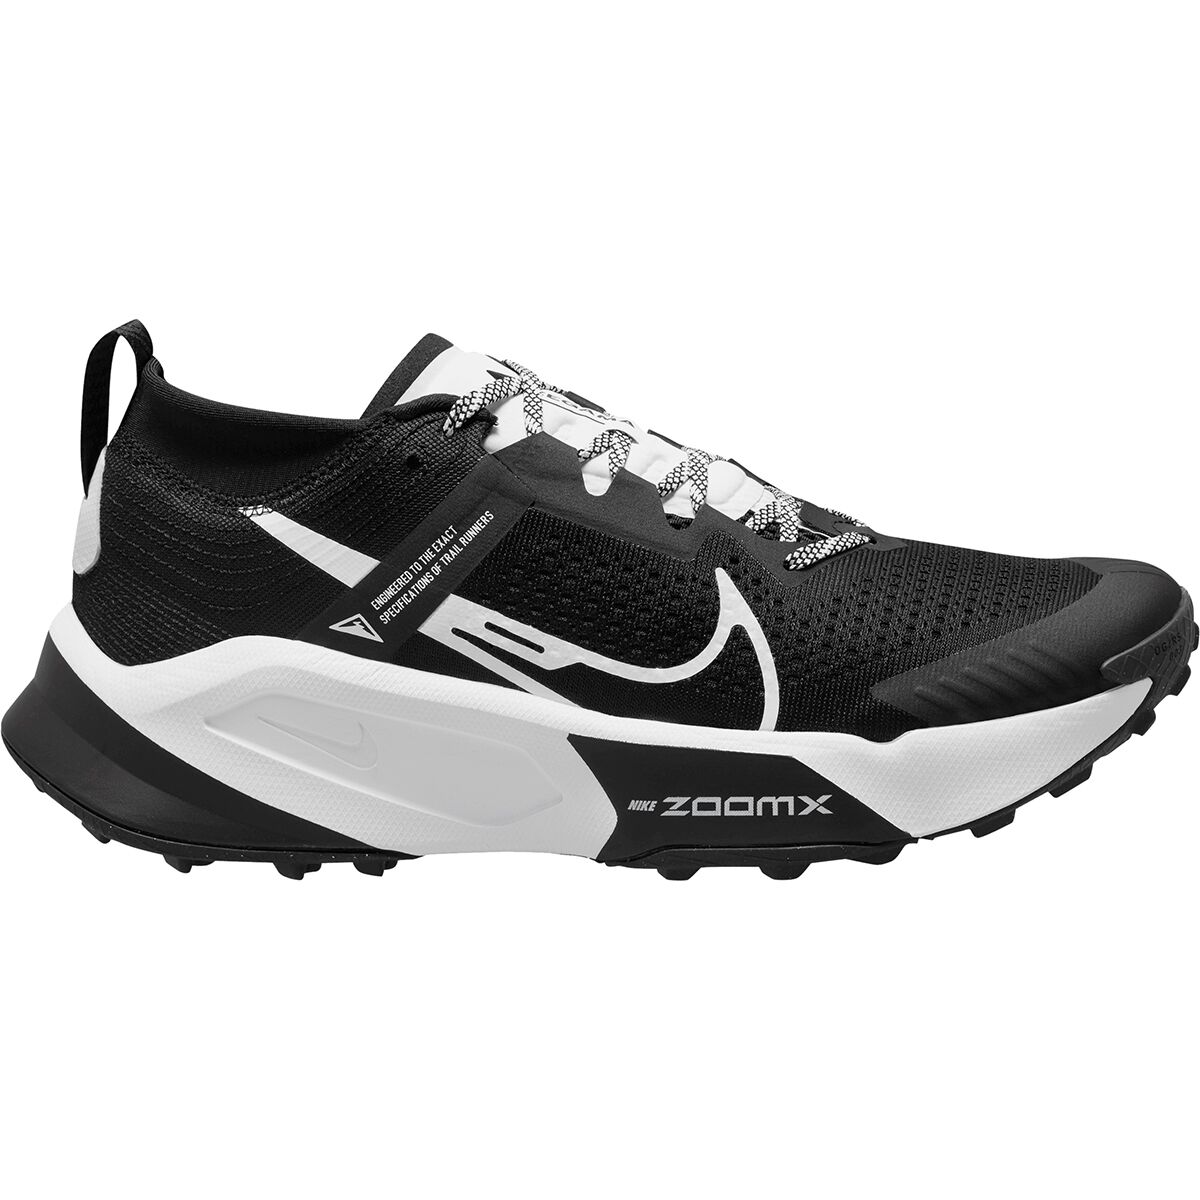 ZoomX Zegama Trail Running Shoe - Men